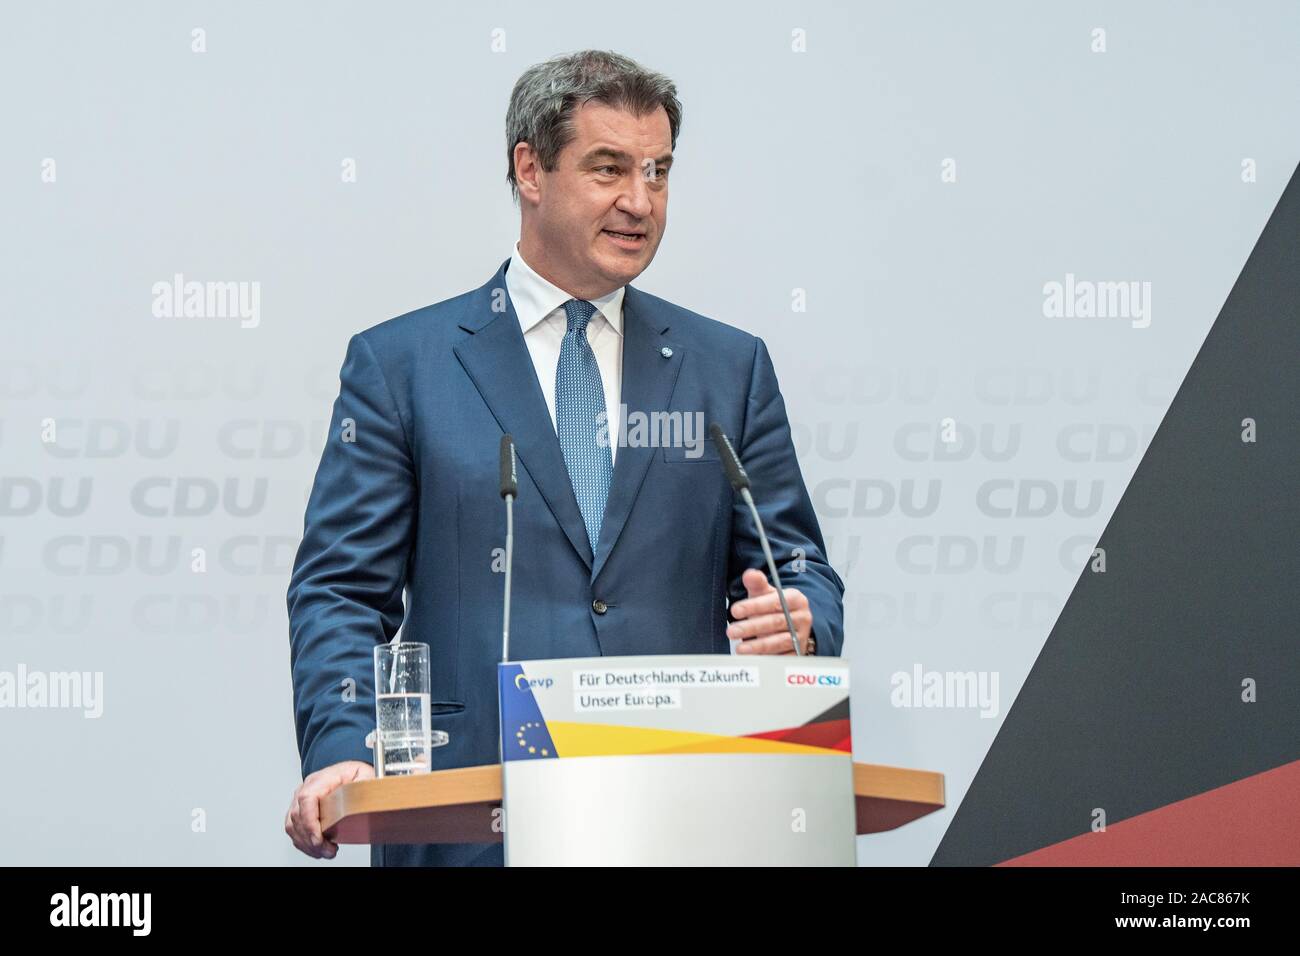 Markus Söder hablando en un evento electoral en mayo de 2019 en Berlín. Esta foto muestra a él hablando de la CDU resultados electorales como vinieron. Foto de stock